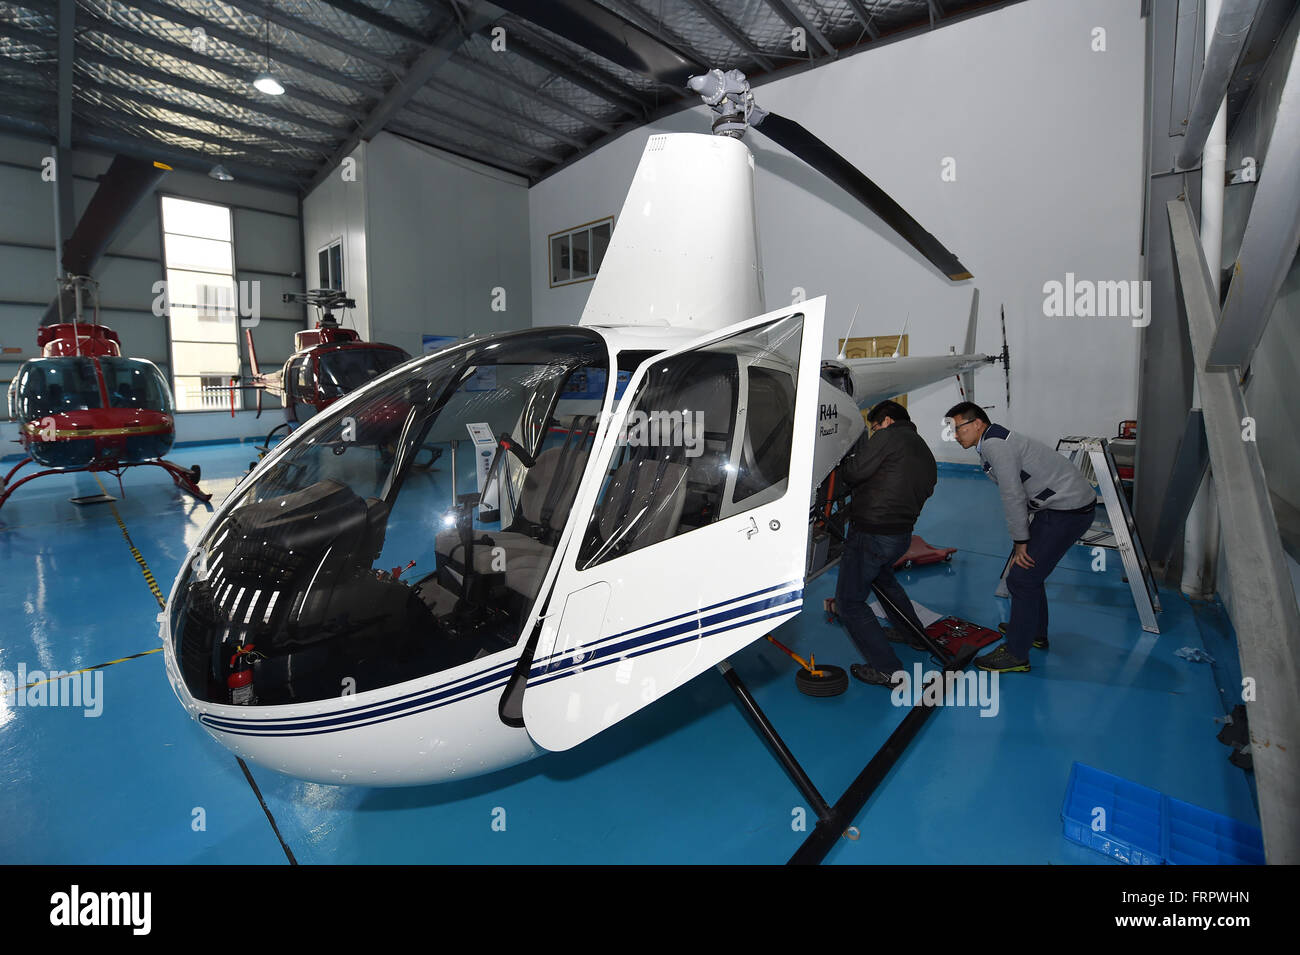 Ningbo, province de Zhejiang en Chine. Mar 23, 2016. Techniciens maintenir un hélicoptère Robinson RAVEN au centre de Shanghai de Yida Aero dynamique générale Tech. Company (GDAT), un aéronef général magasin 5S, à la zone portuaire sous douane Meishan à Ningbo, province de Zhejiang en Chine orientale, le 23 mars 2016. L'aéronef magasin 5S, qui a été inaugurée le 8 avril 2015, a vendu 88 hélicoptères par ici. Le magasin fournit plus de 20 types d'hélicoptères avec prix de vente entre 3 à 100 millions de yuans (1,38 millions de dollars US 461,400-15). Credit : Huang Zongzhi/Xinhua/Alamy Live News Banque D'Images